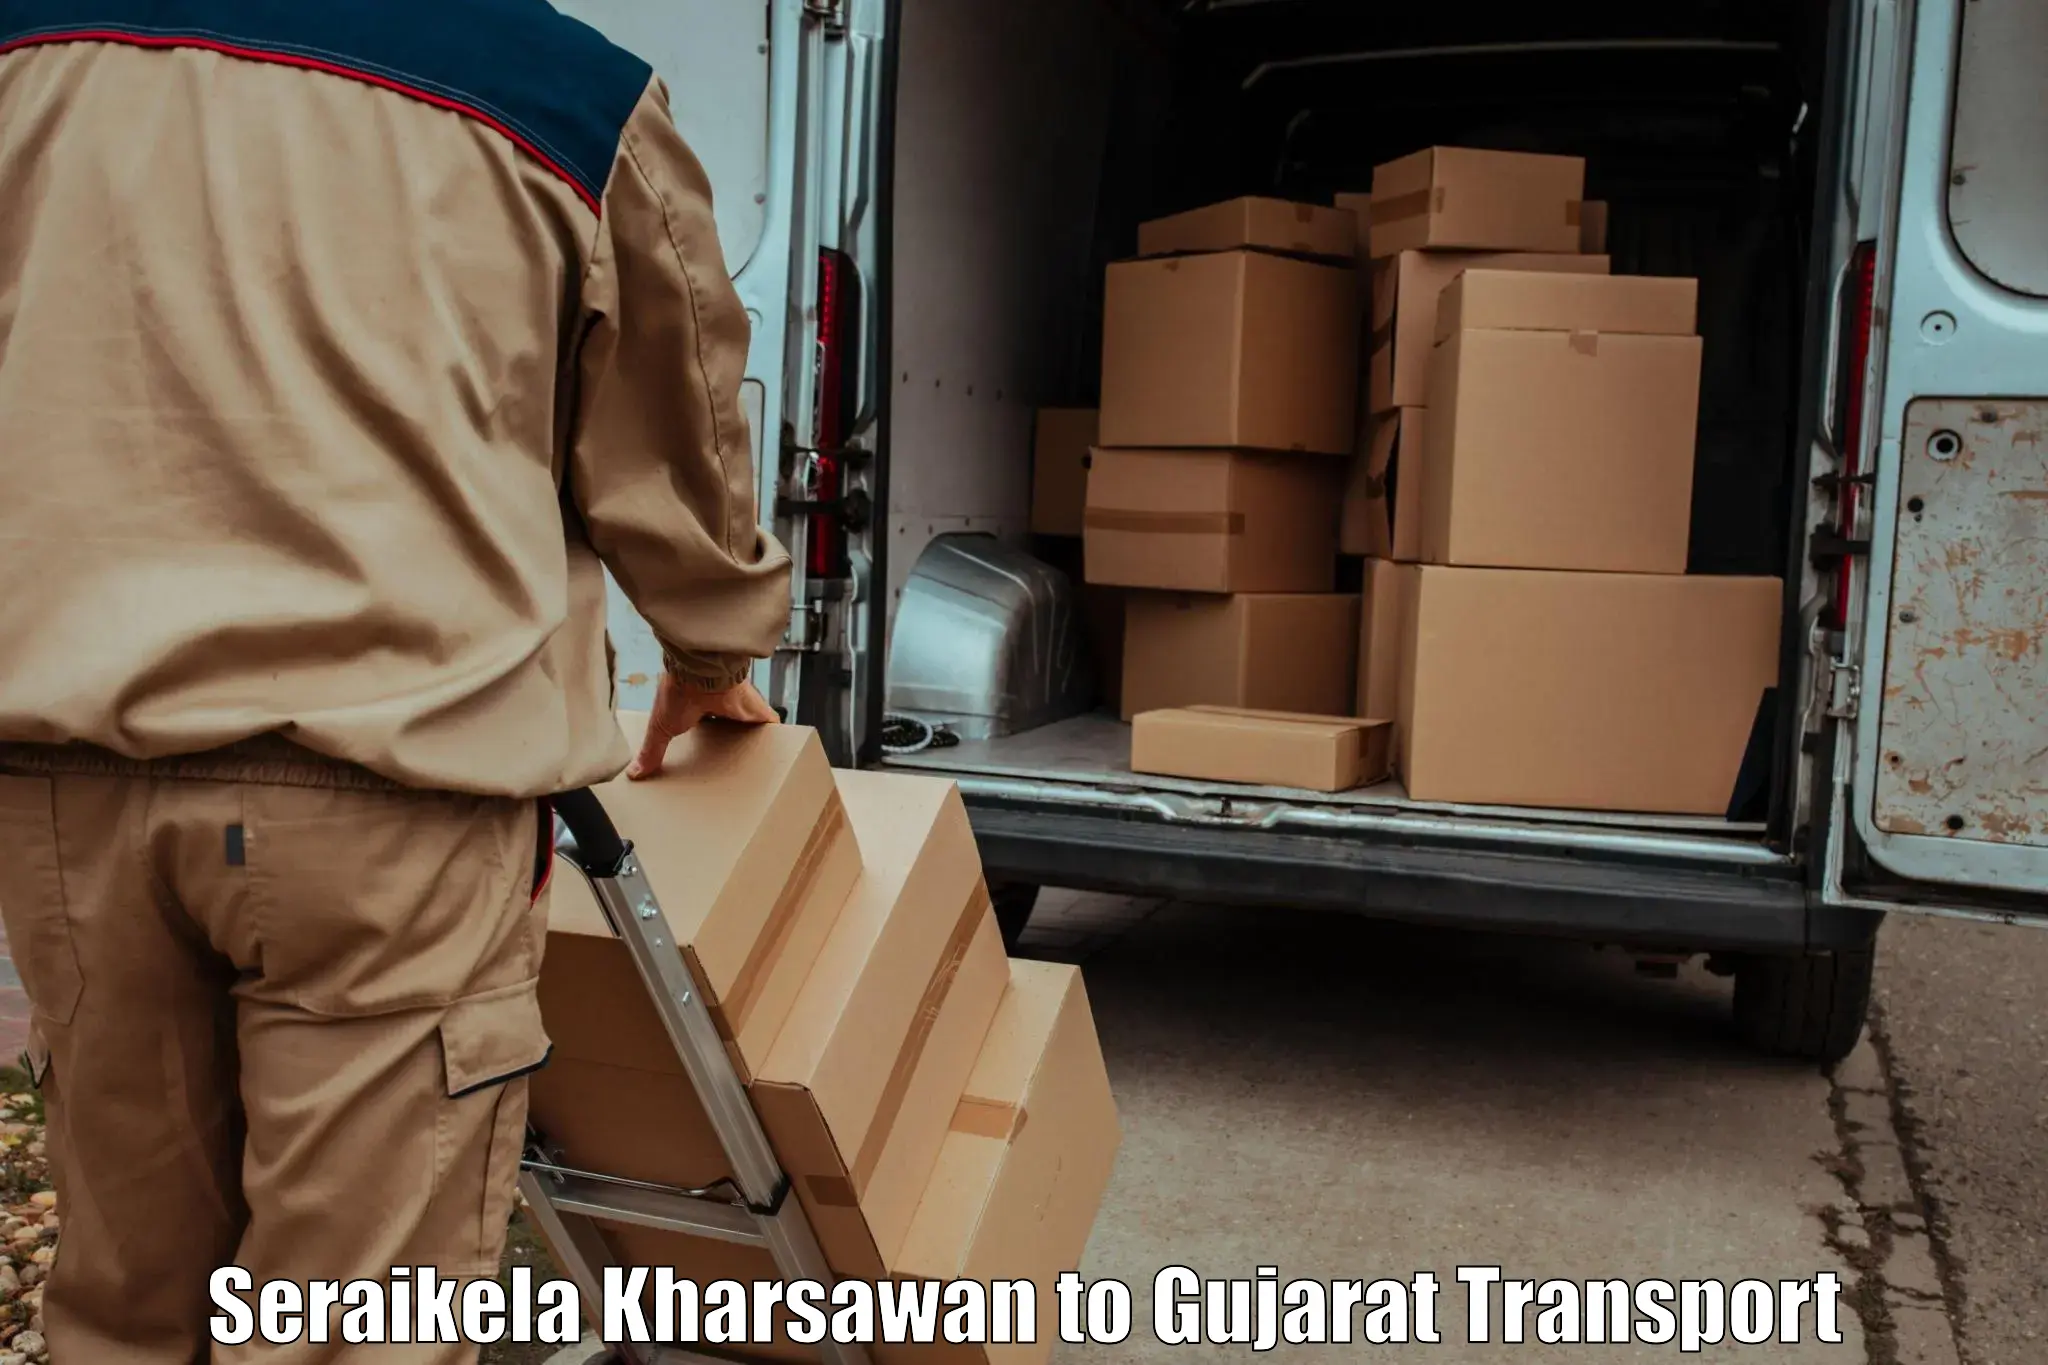 Online transport booking Seraikela Kharsawan to Dholera